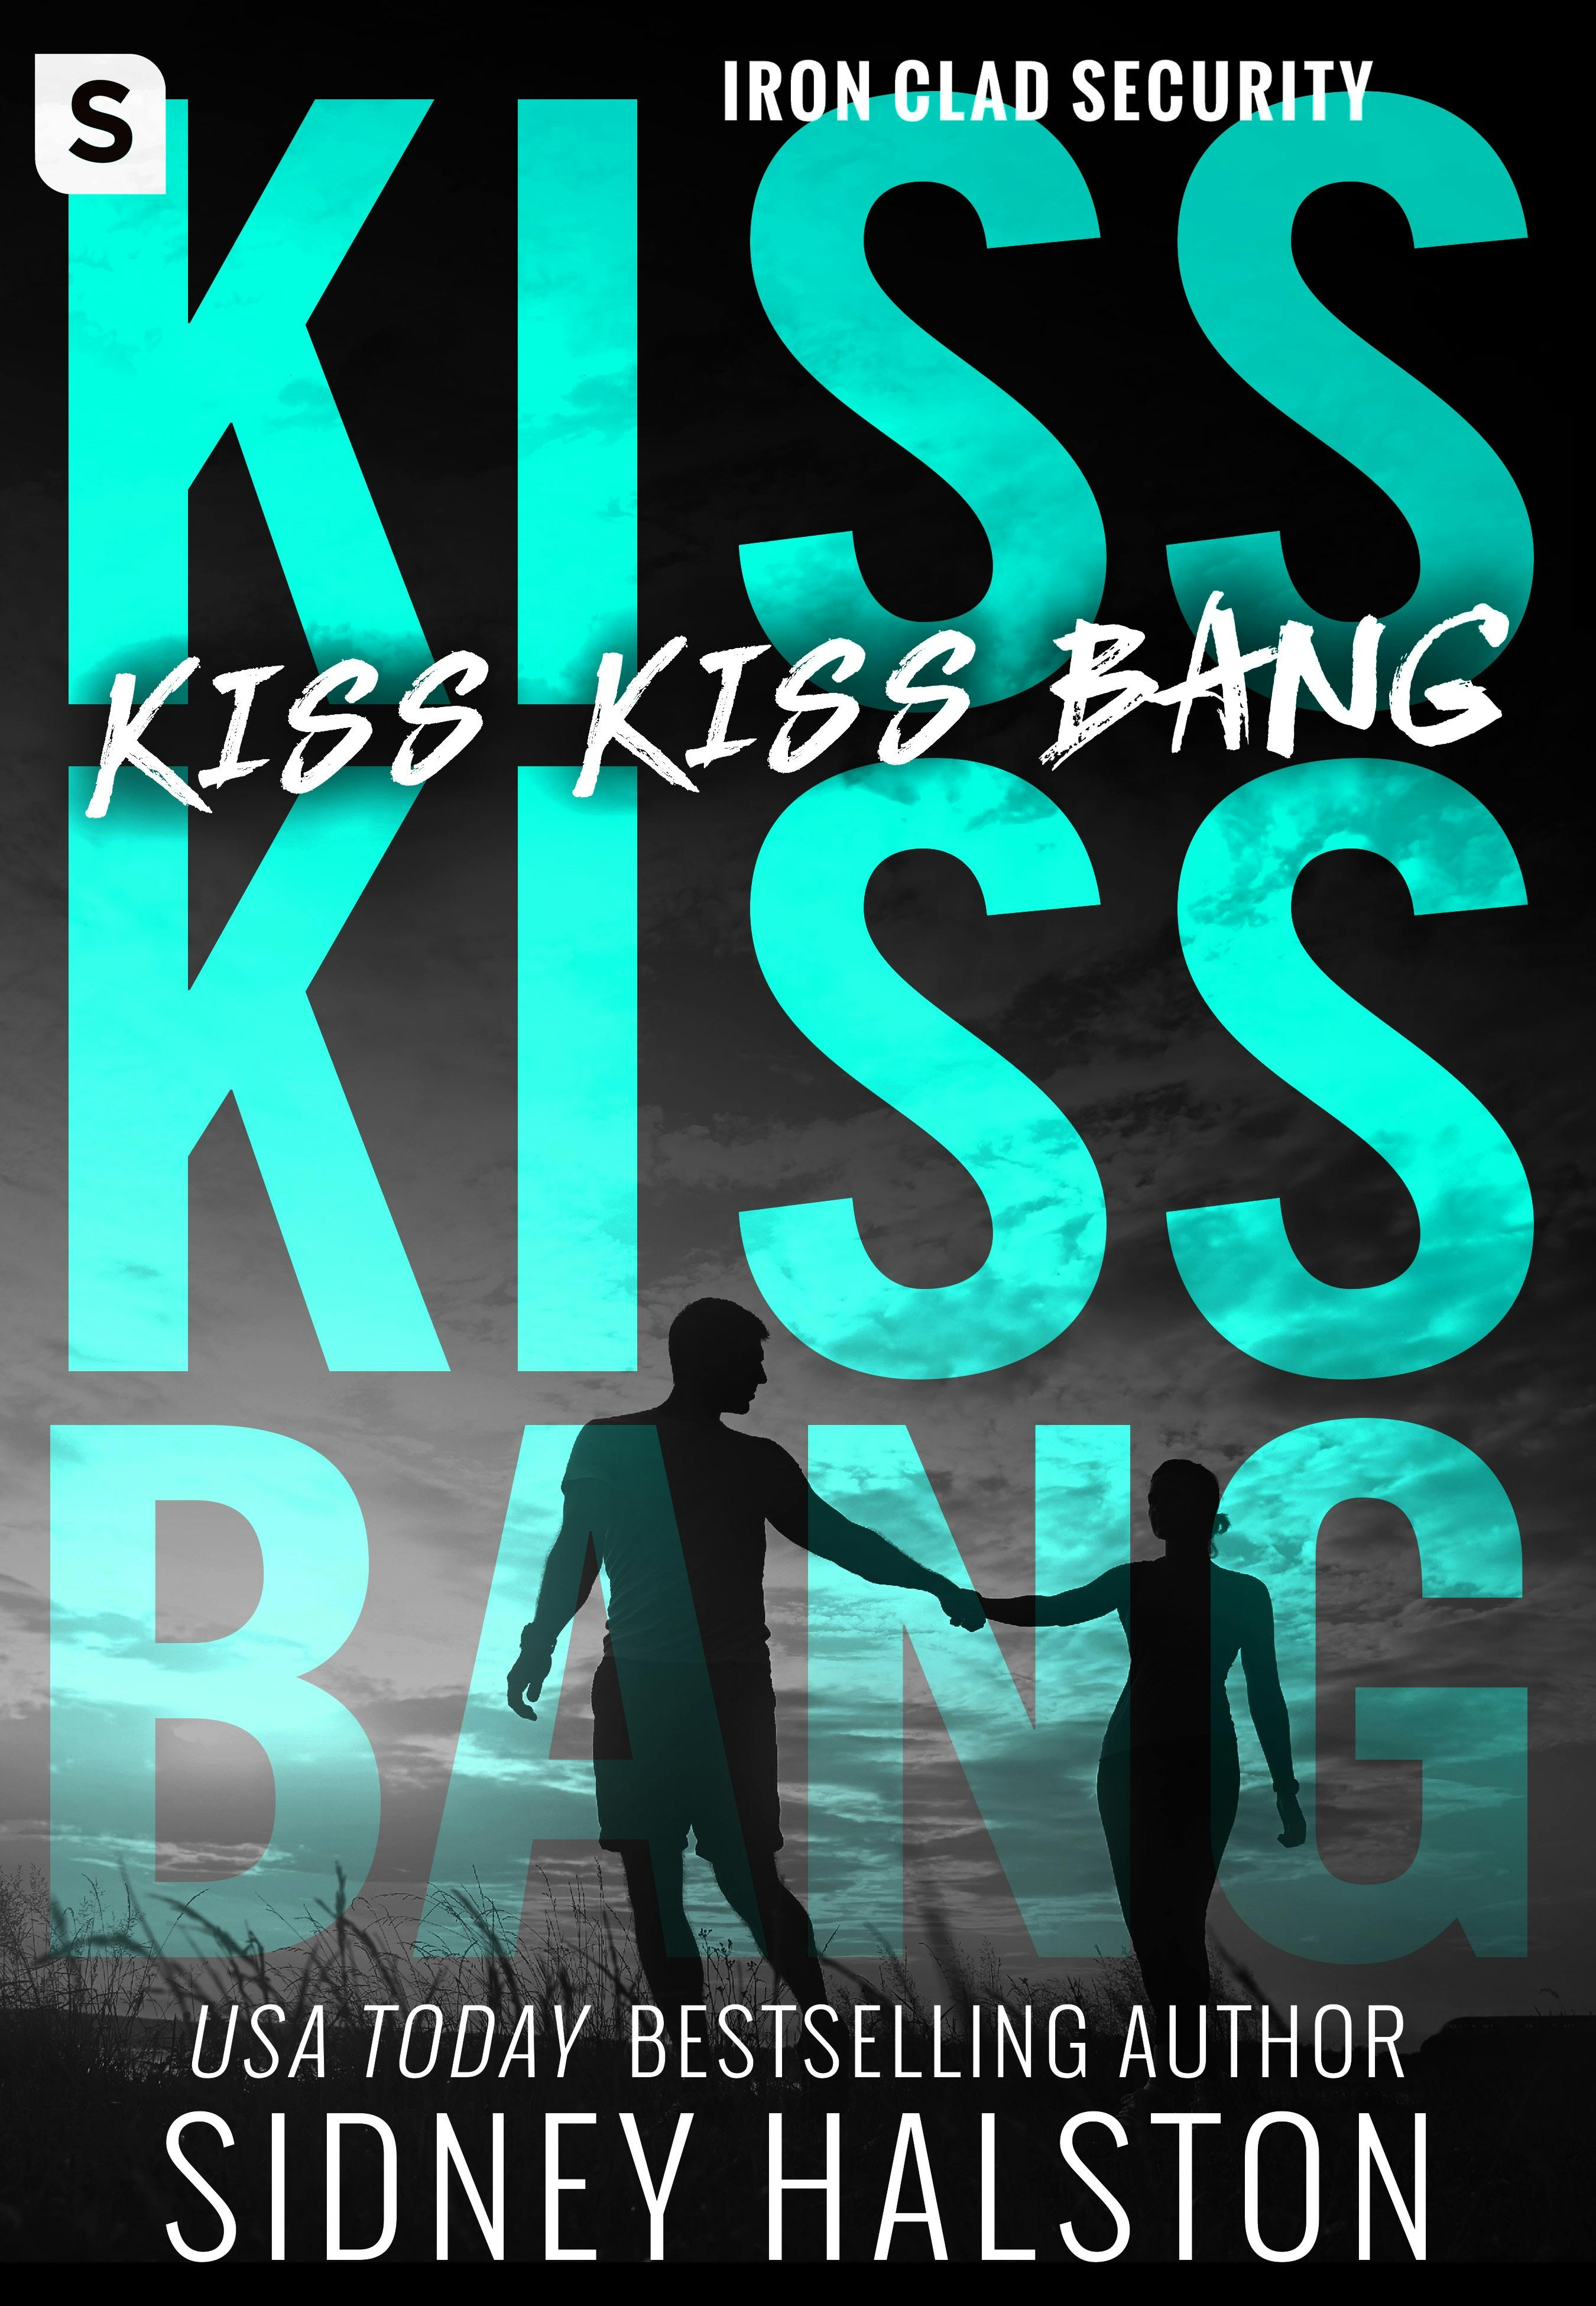 Image of Kiss Kiss Bang